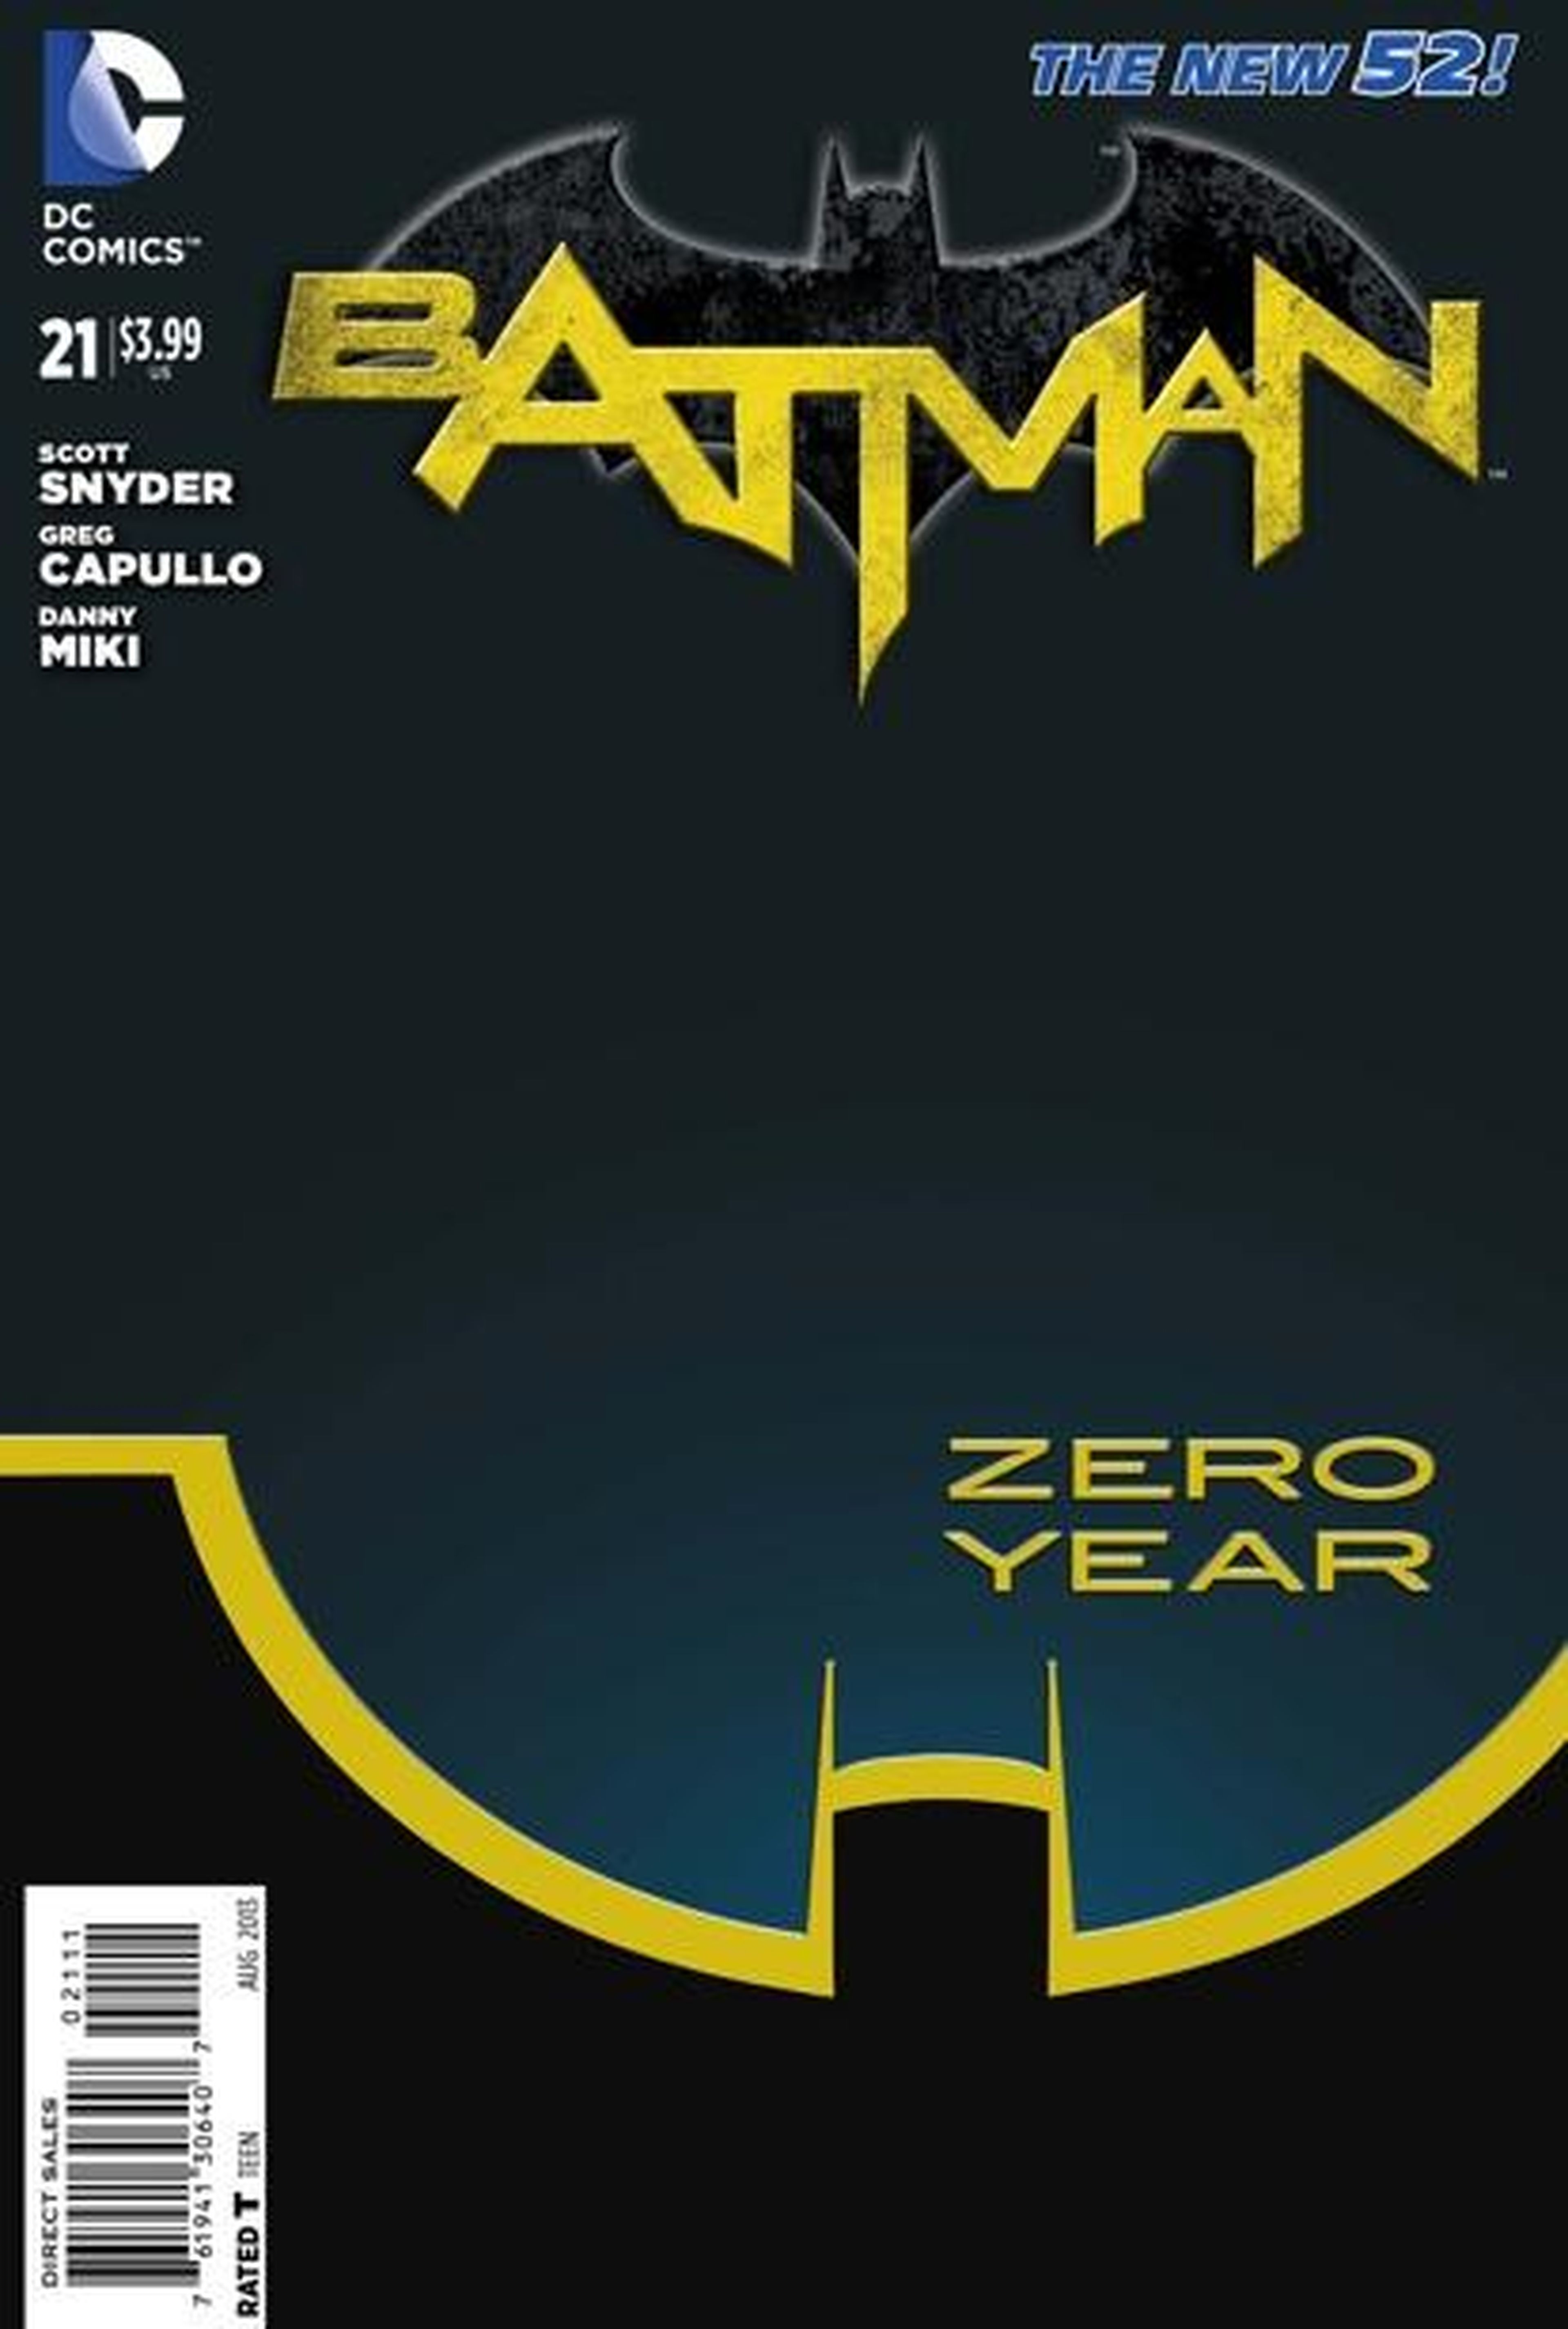 EEUU: Primer vistazo a Batman Zero Year